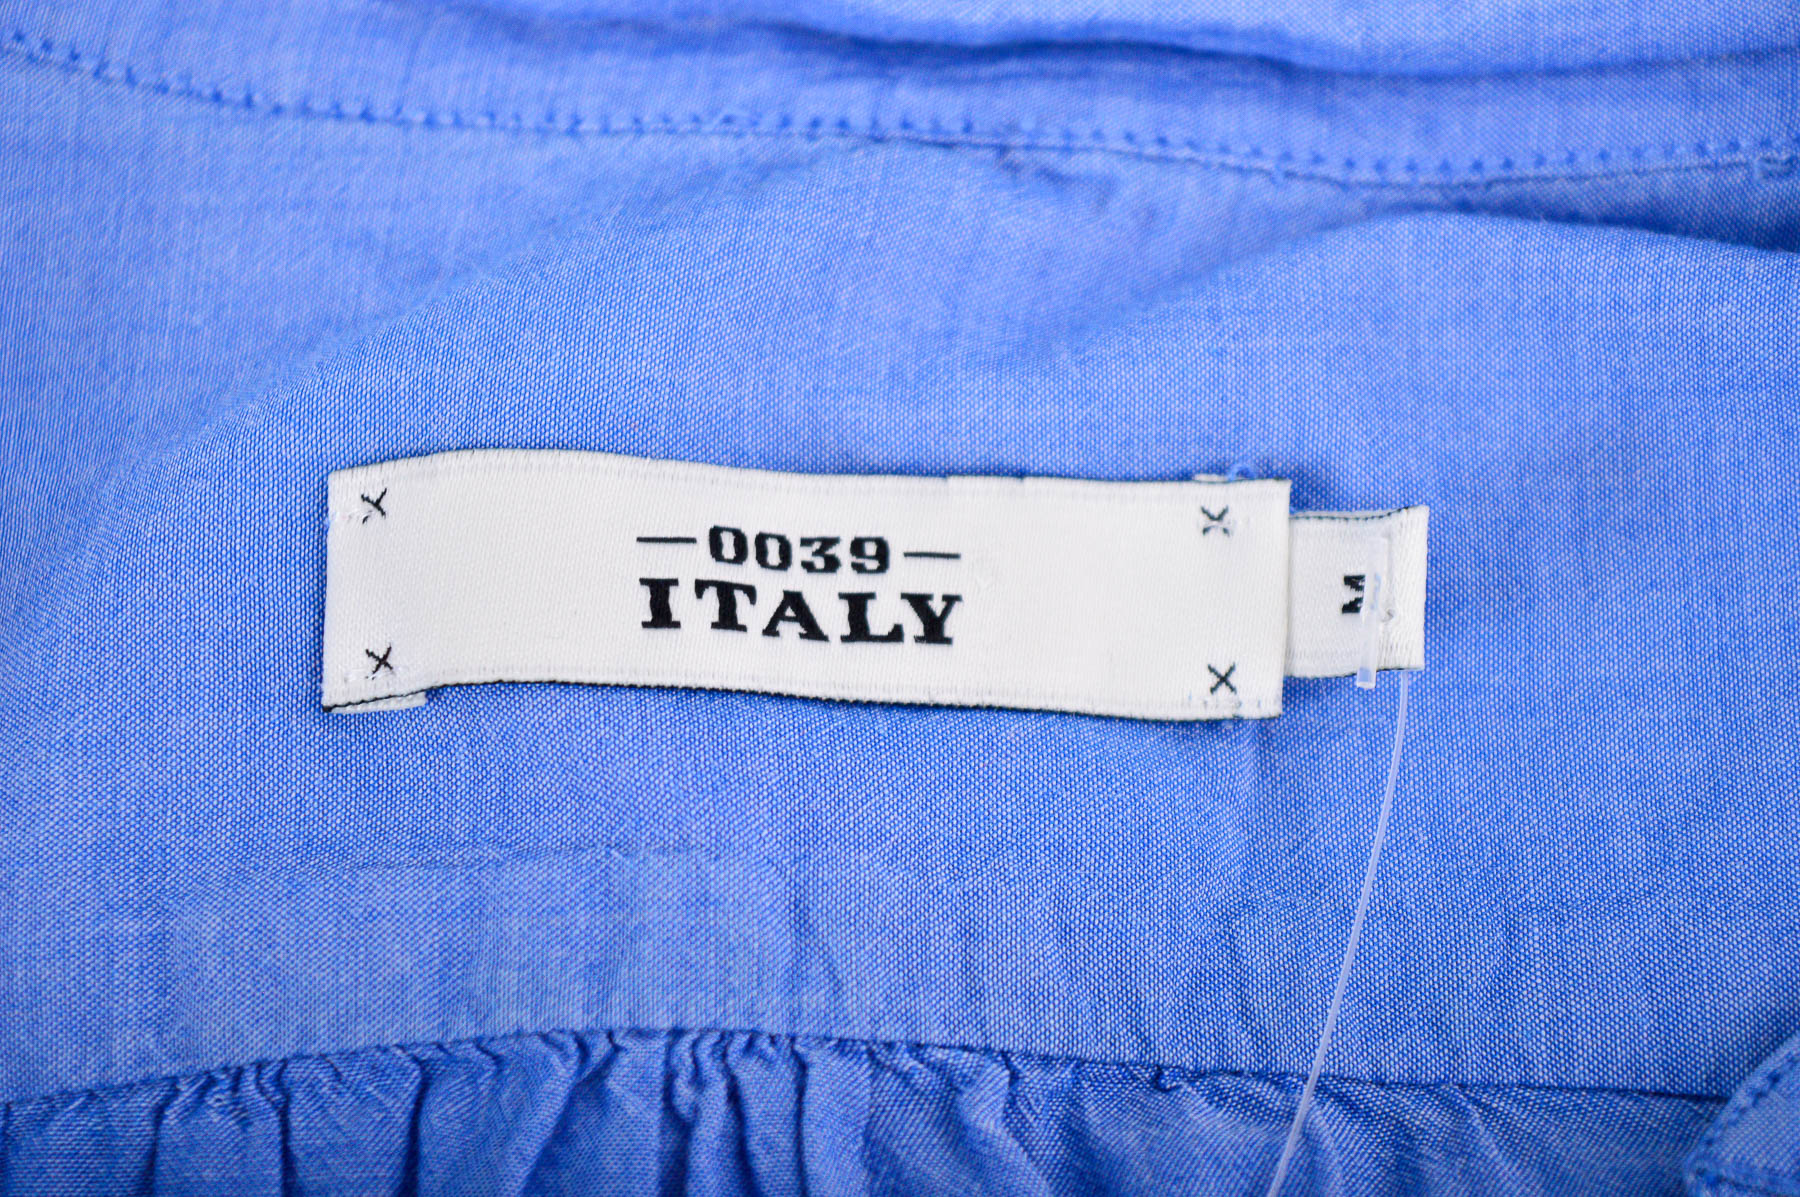 Women's shirt - 0039 Italy - 2